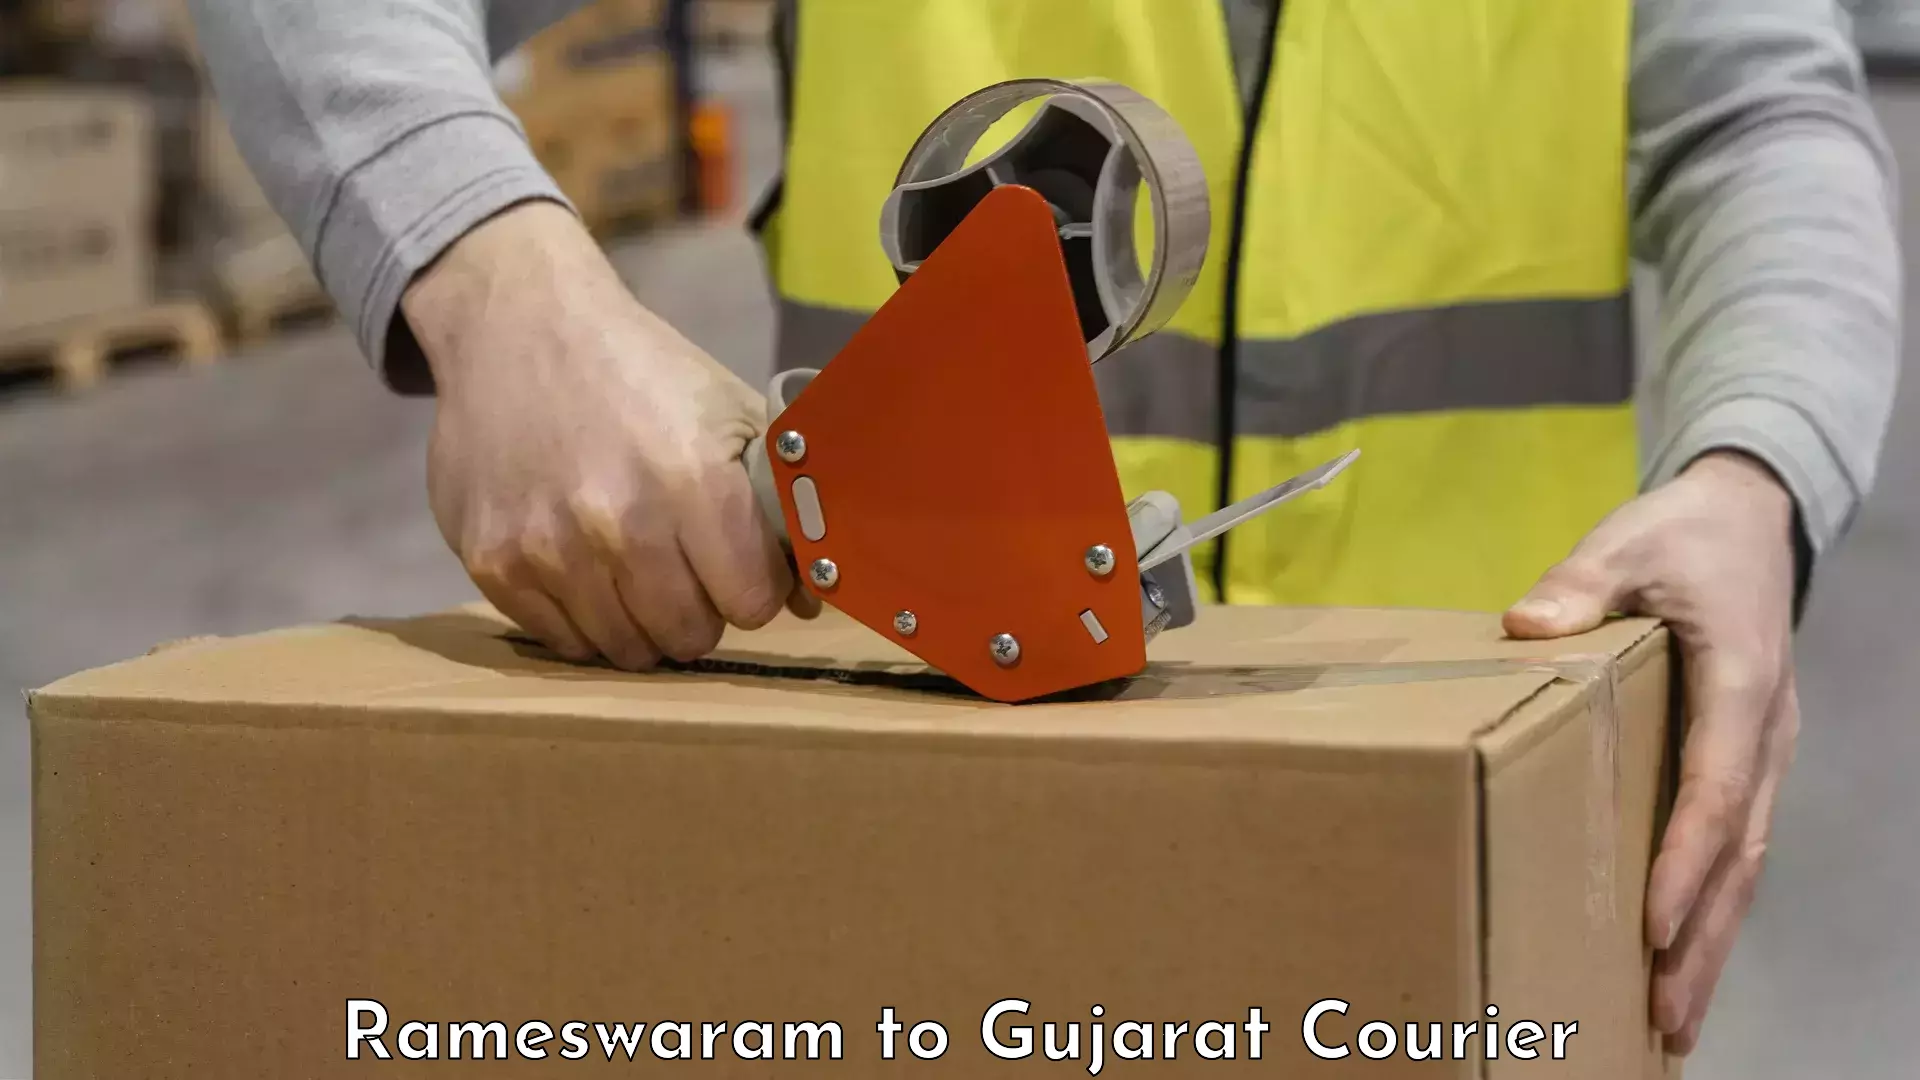 Luggage transport consulting Rameswaram to Gujarat